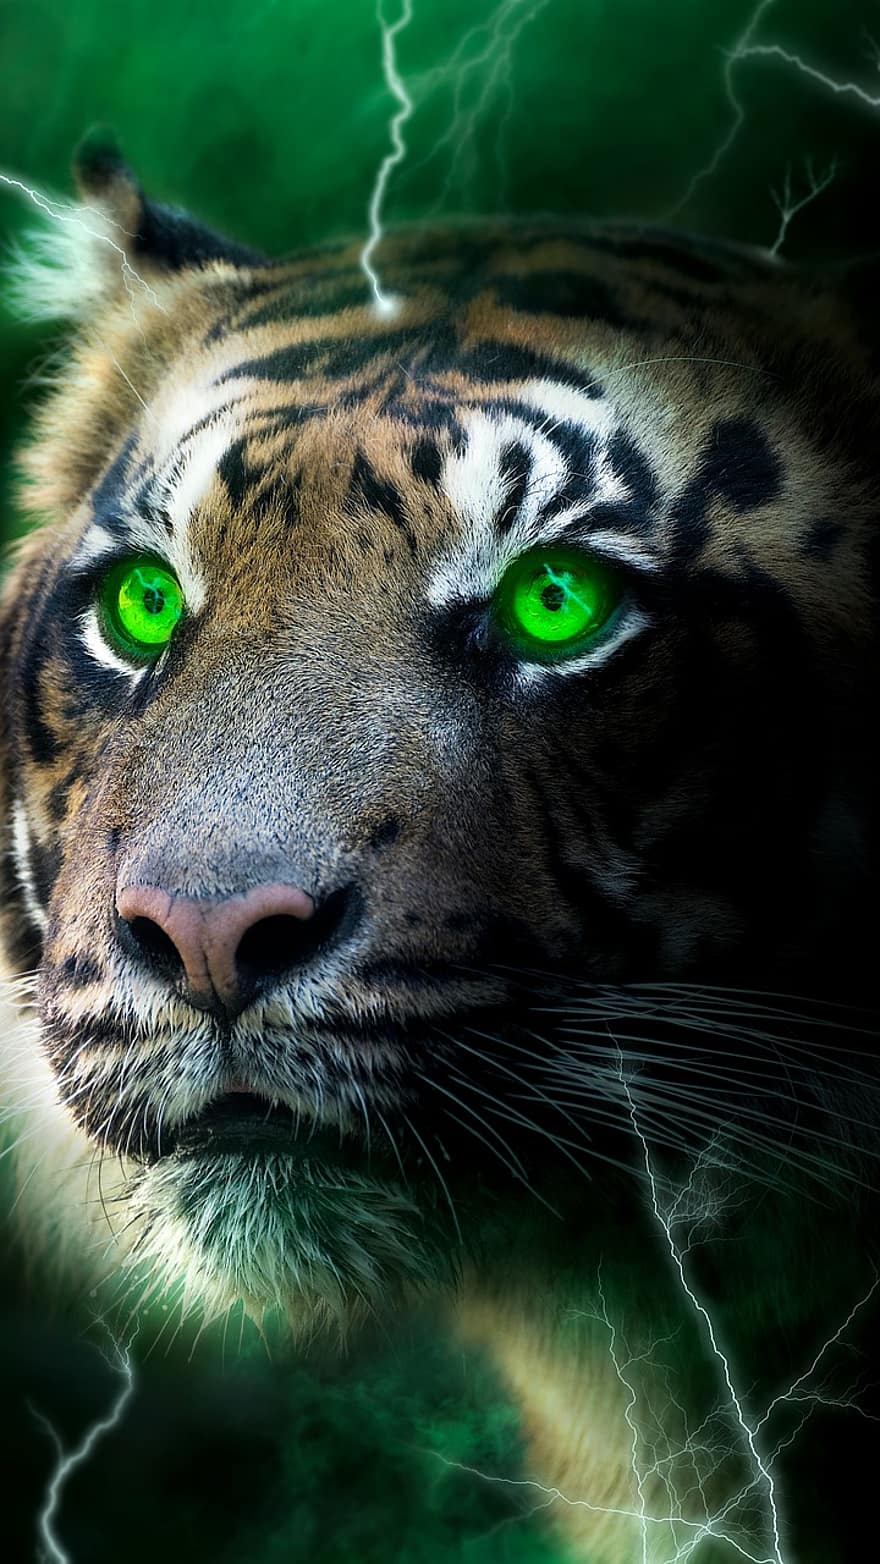 호랑이, 번개, 어두운, 불타는 듯한 빛깔, 녹색, 안개, 벽지, 고양이 같은, 야생 동물, 동물 머리, undomesticated 고양이